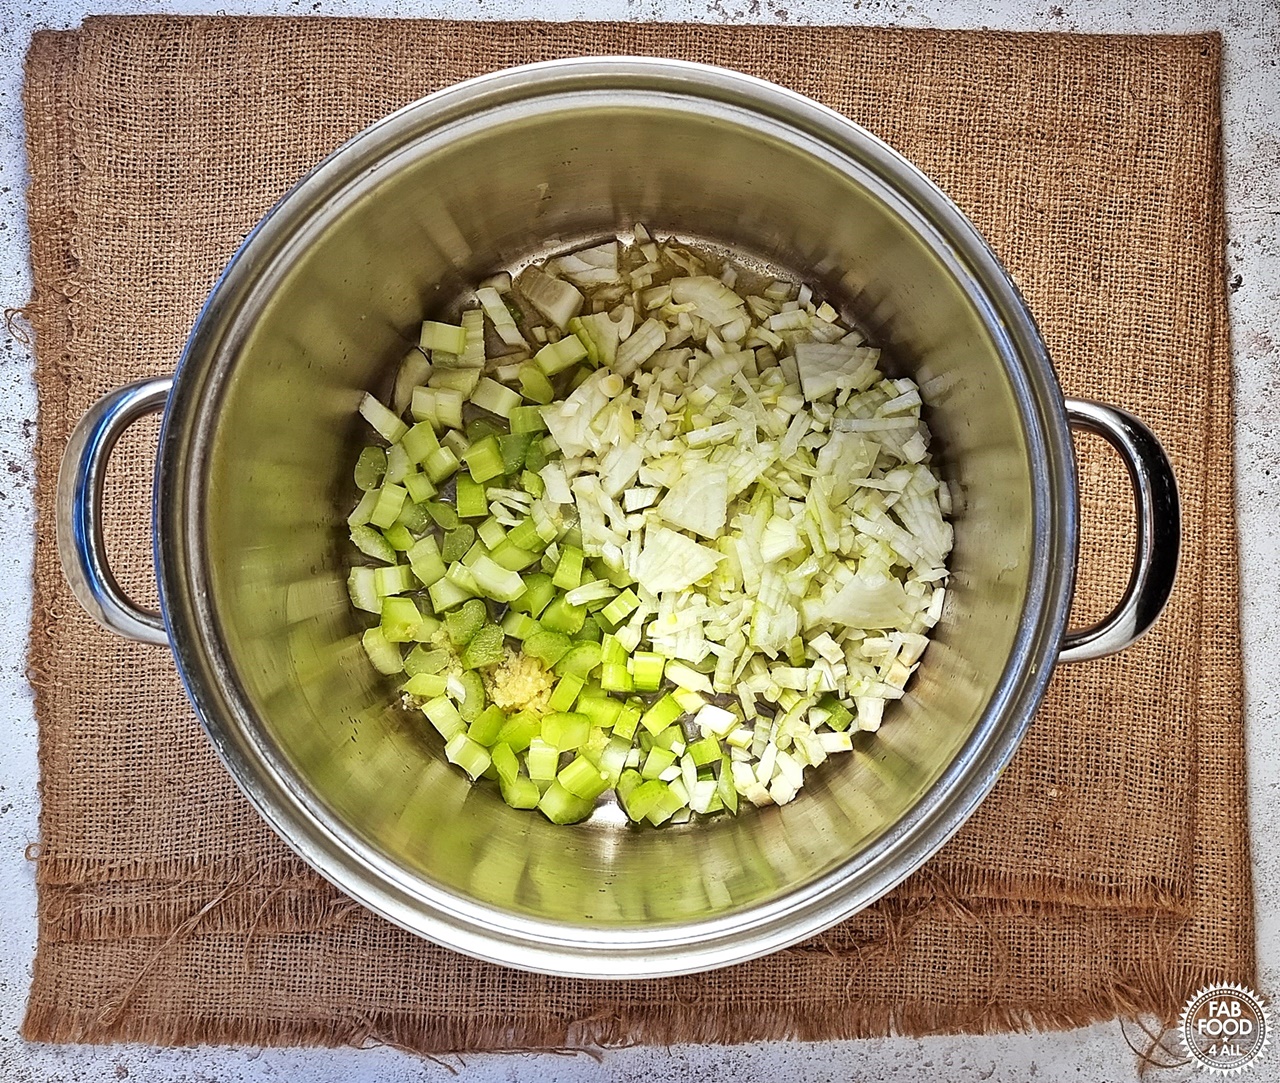 Pan shot with chopped onion, celery & garlic.